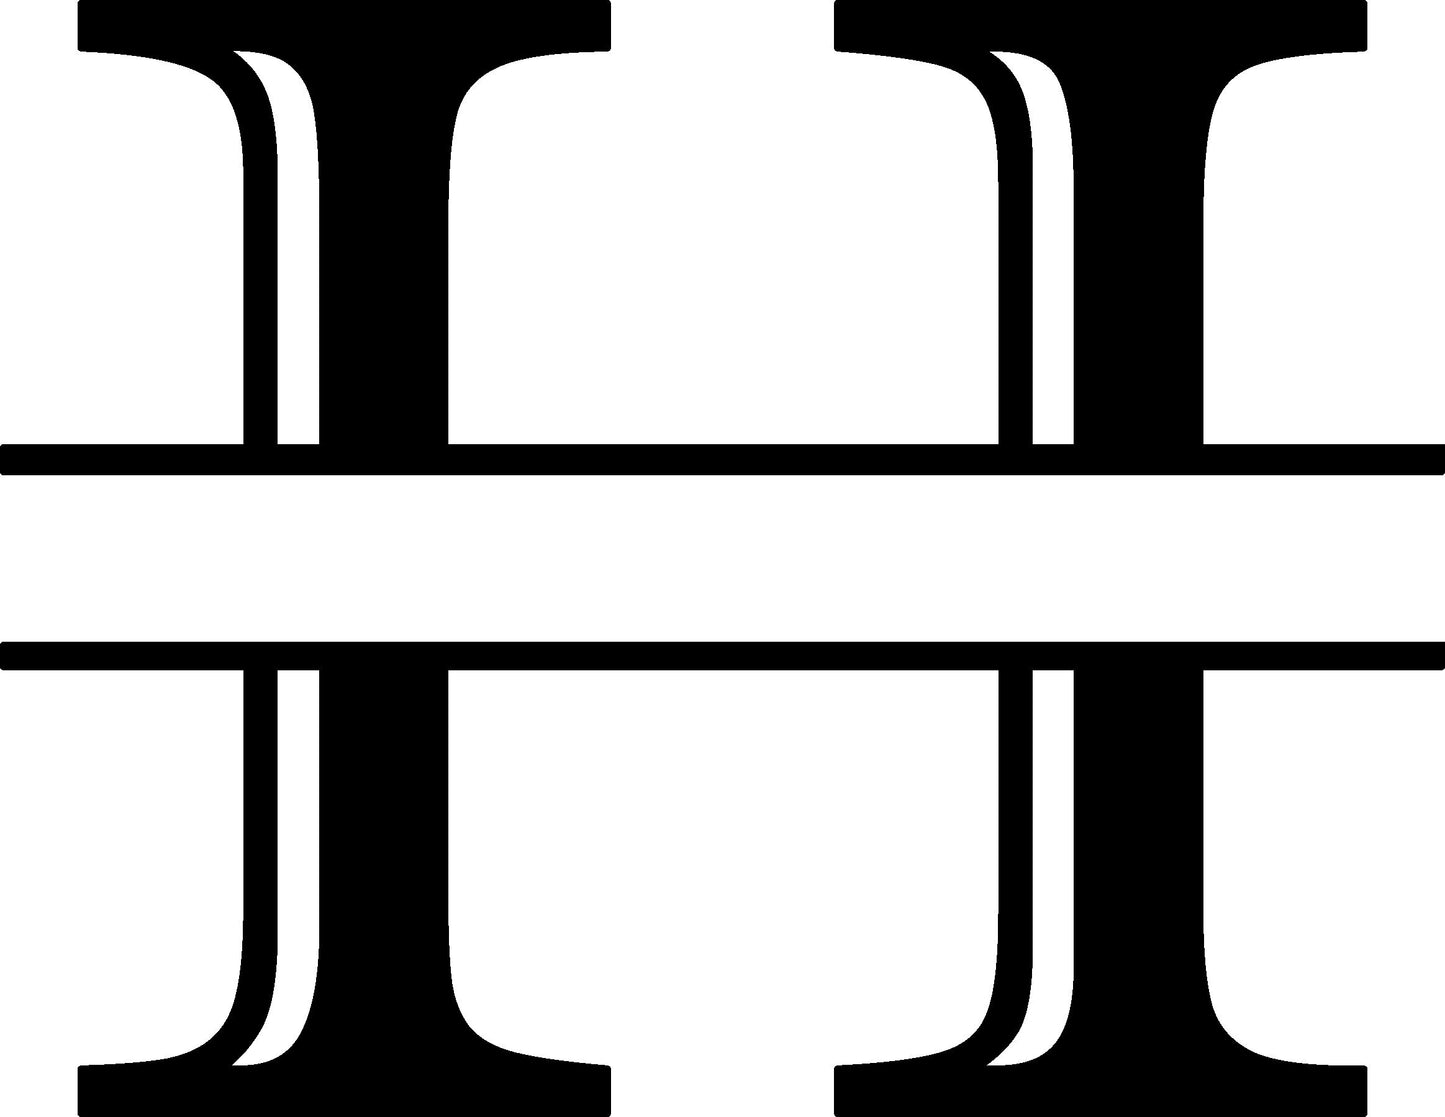 H Letter Split Monogram - Digital file with SVG and PNG file